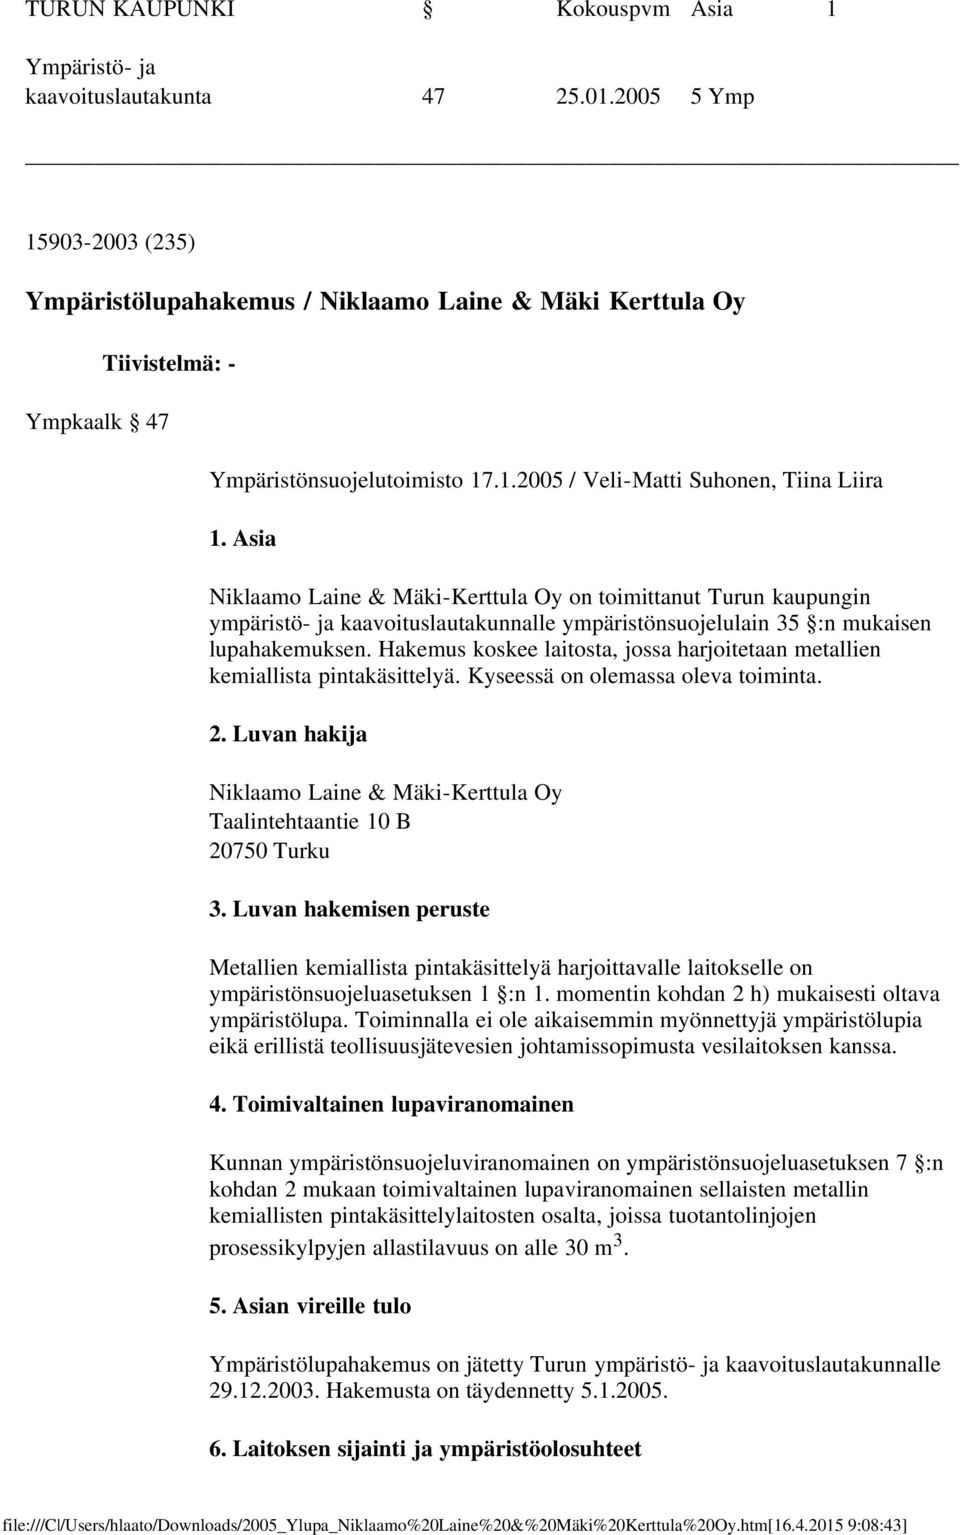 Asia Niklaamo Laine & Mäki-Kerttula Oy on toimittanut Turun kaupungin ympäristö- ja kaavoituslautakunnalle ympäristönsuojelulain 35 :n mukaisen lupahakemuksen.